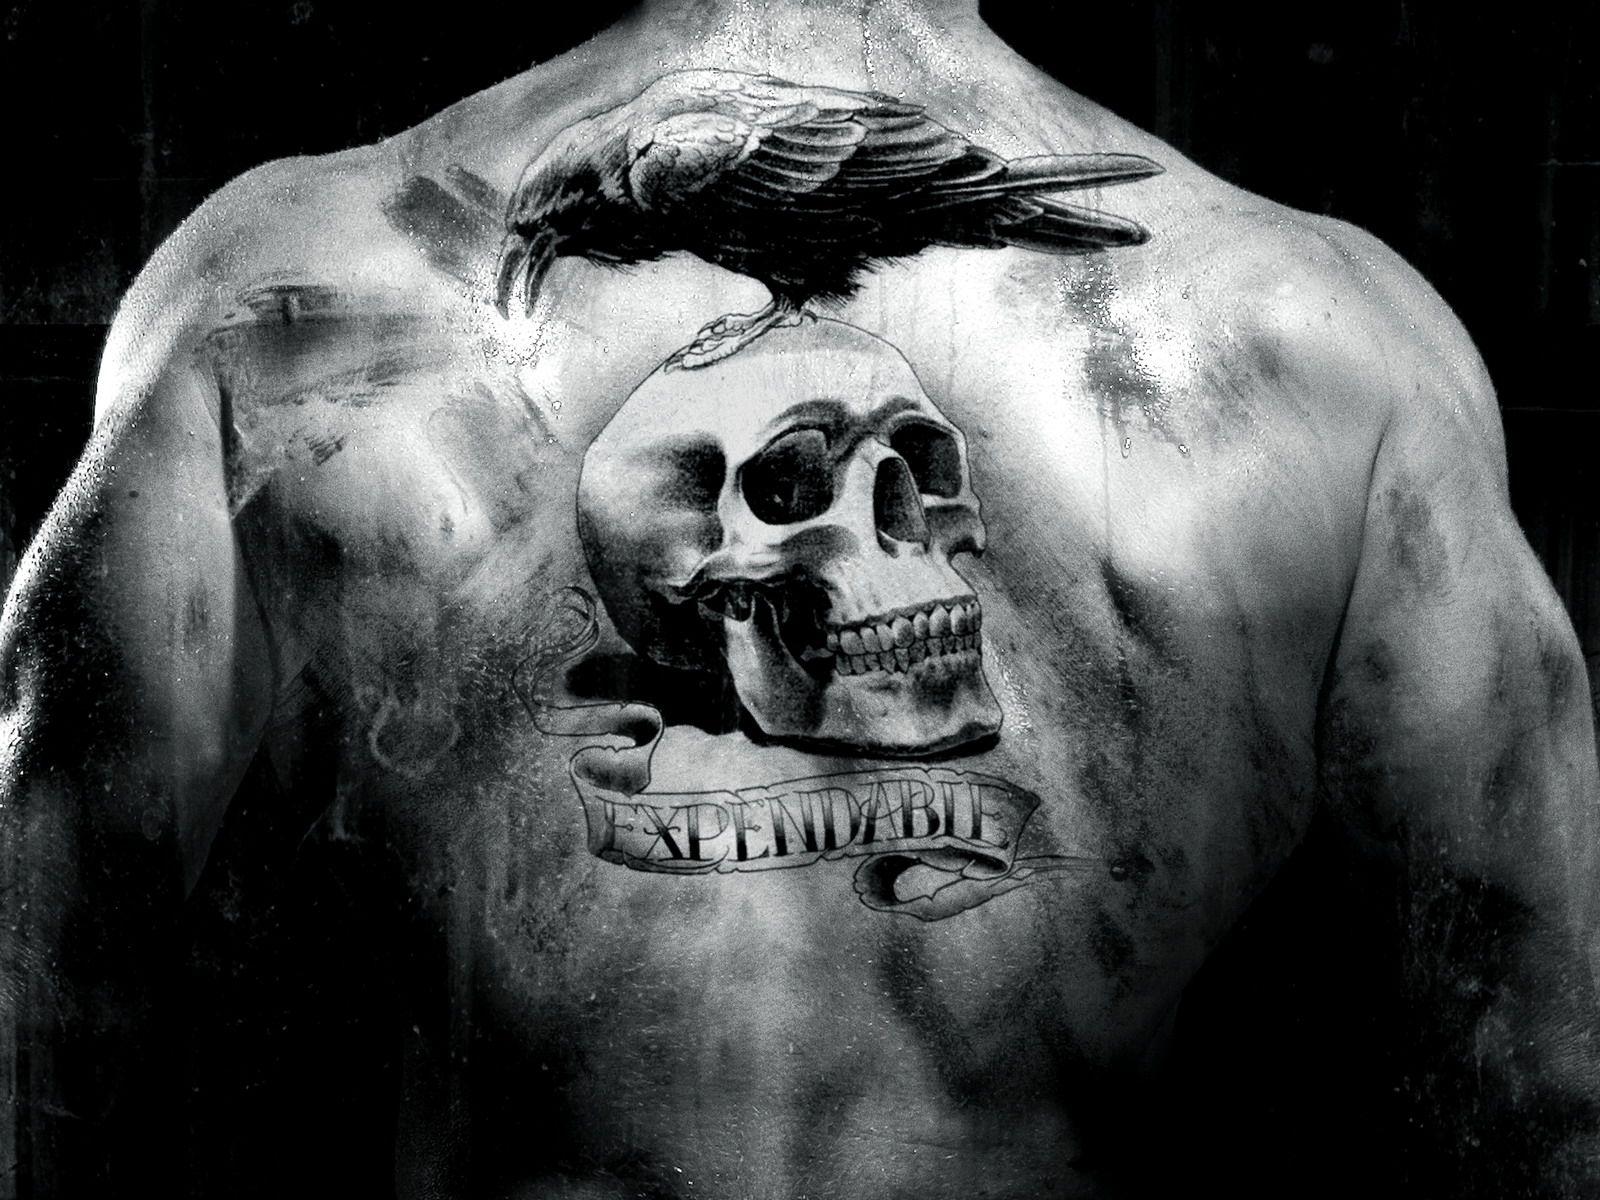 Morbid Attraction Illustrations: My Tattoo-inspired Project Reimagined In 3d  | Skull art, Skull, Skull artwork